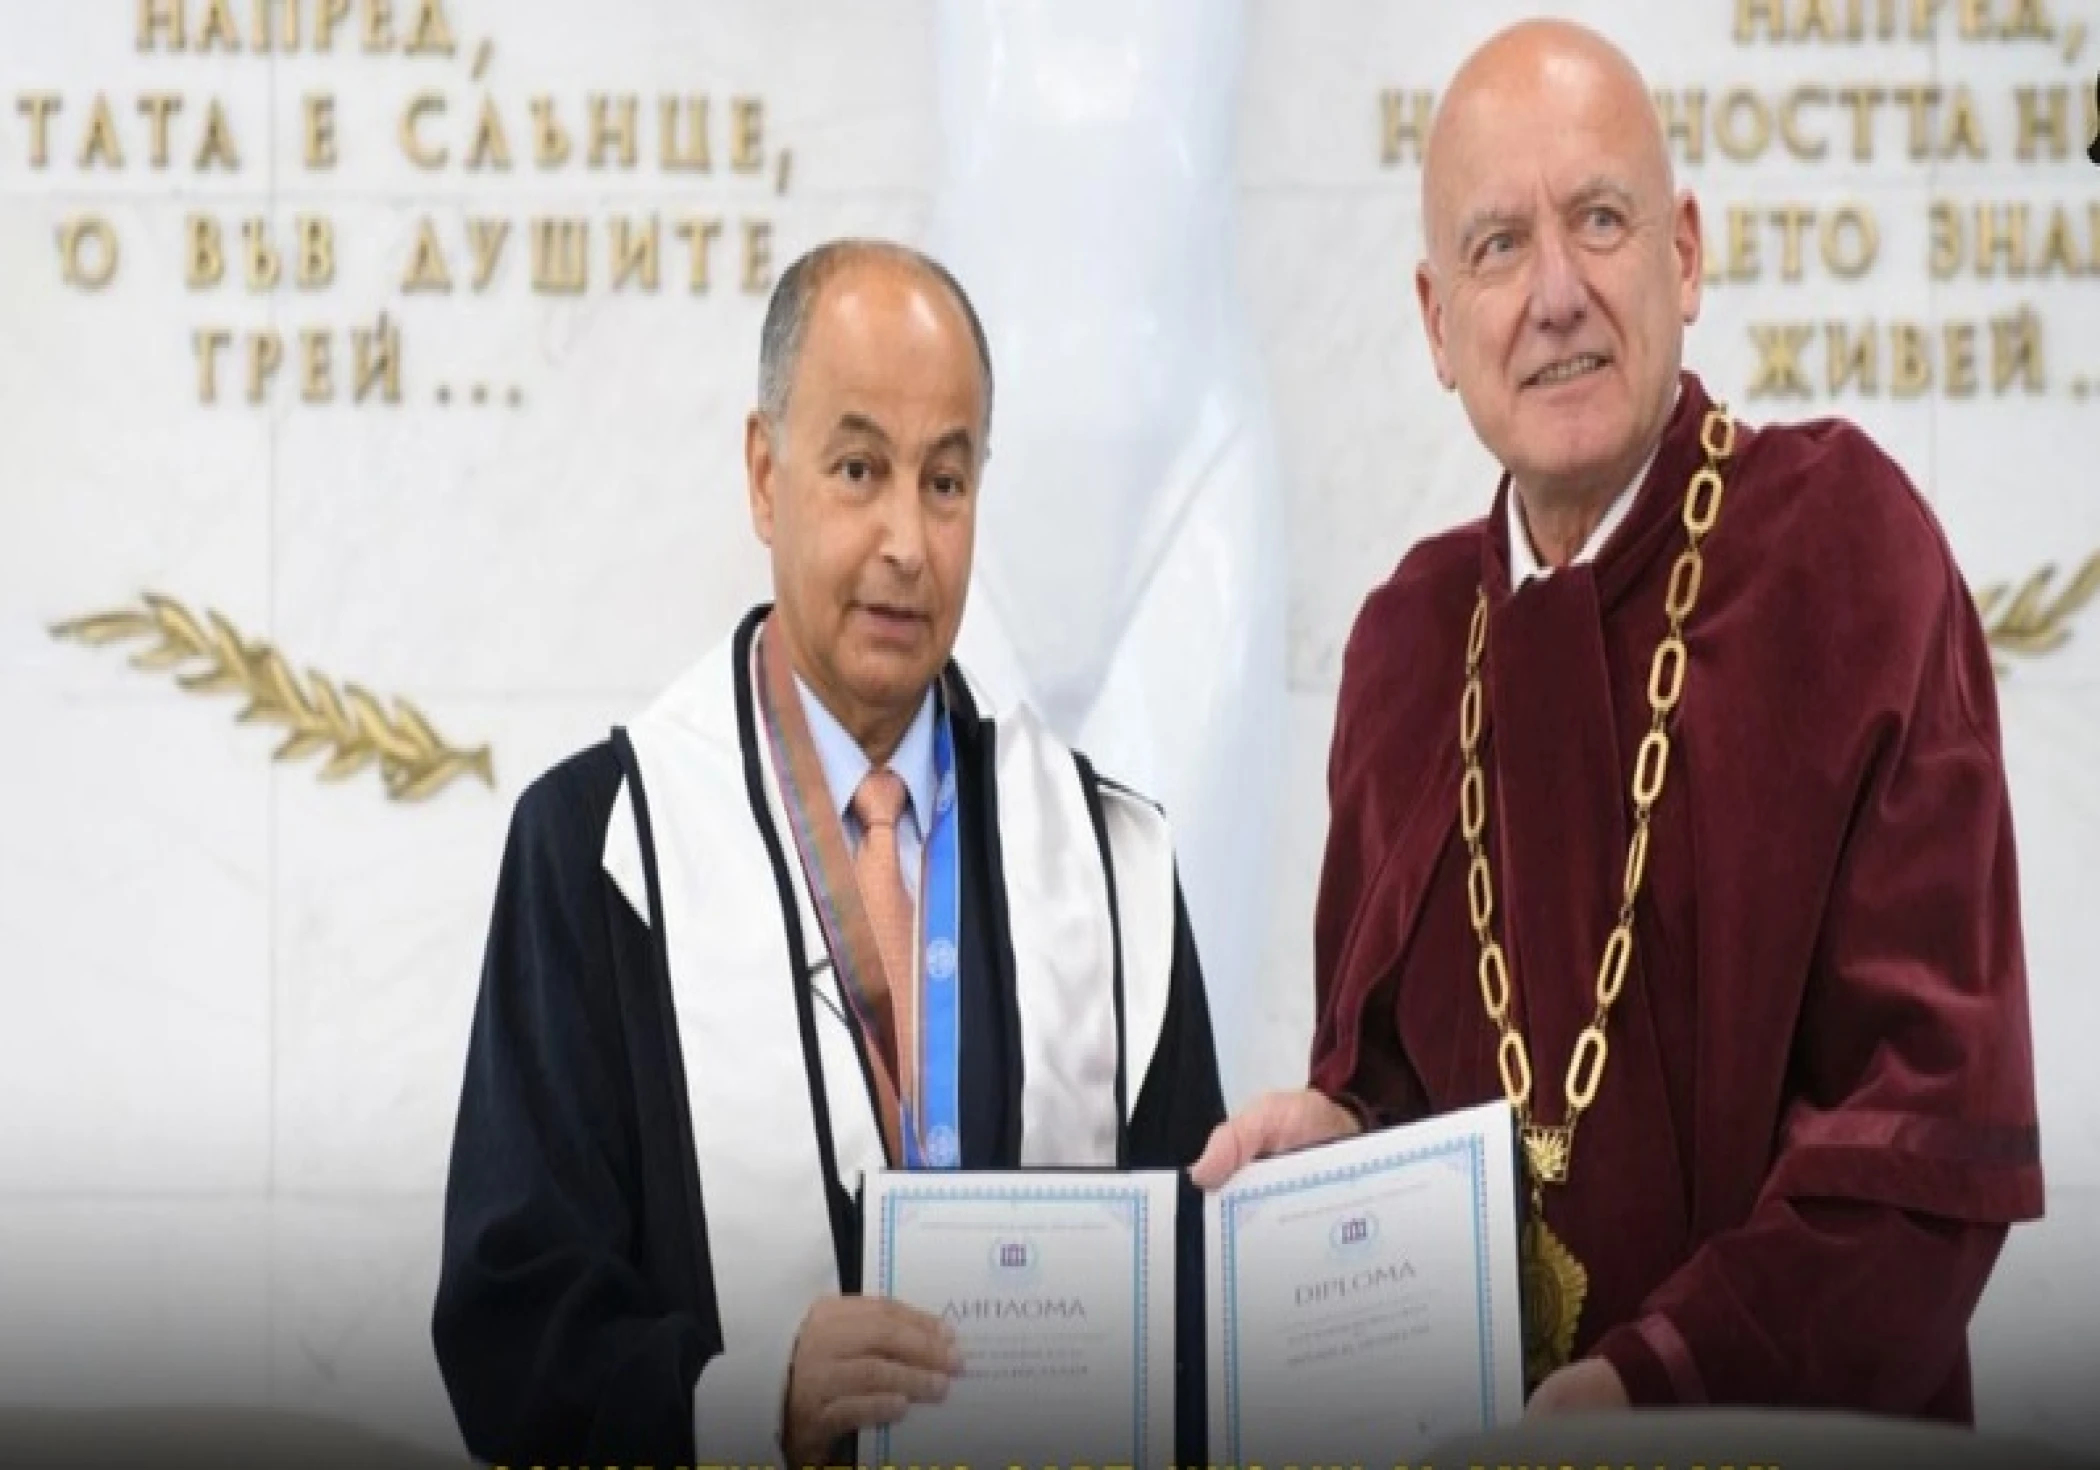 Captain Husain Al Musallam honored with doctorate degree in Bulgaria